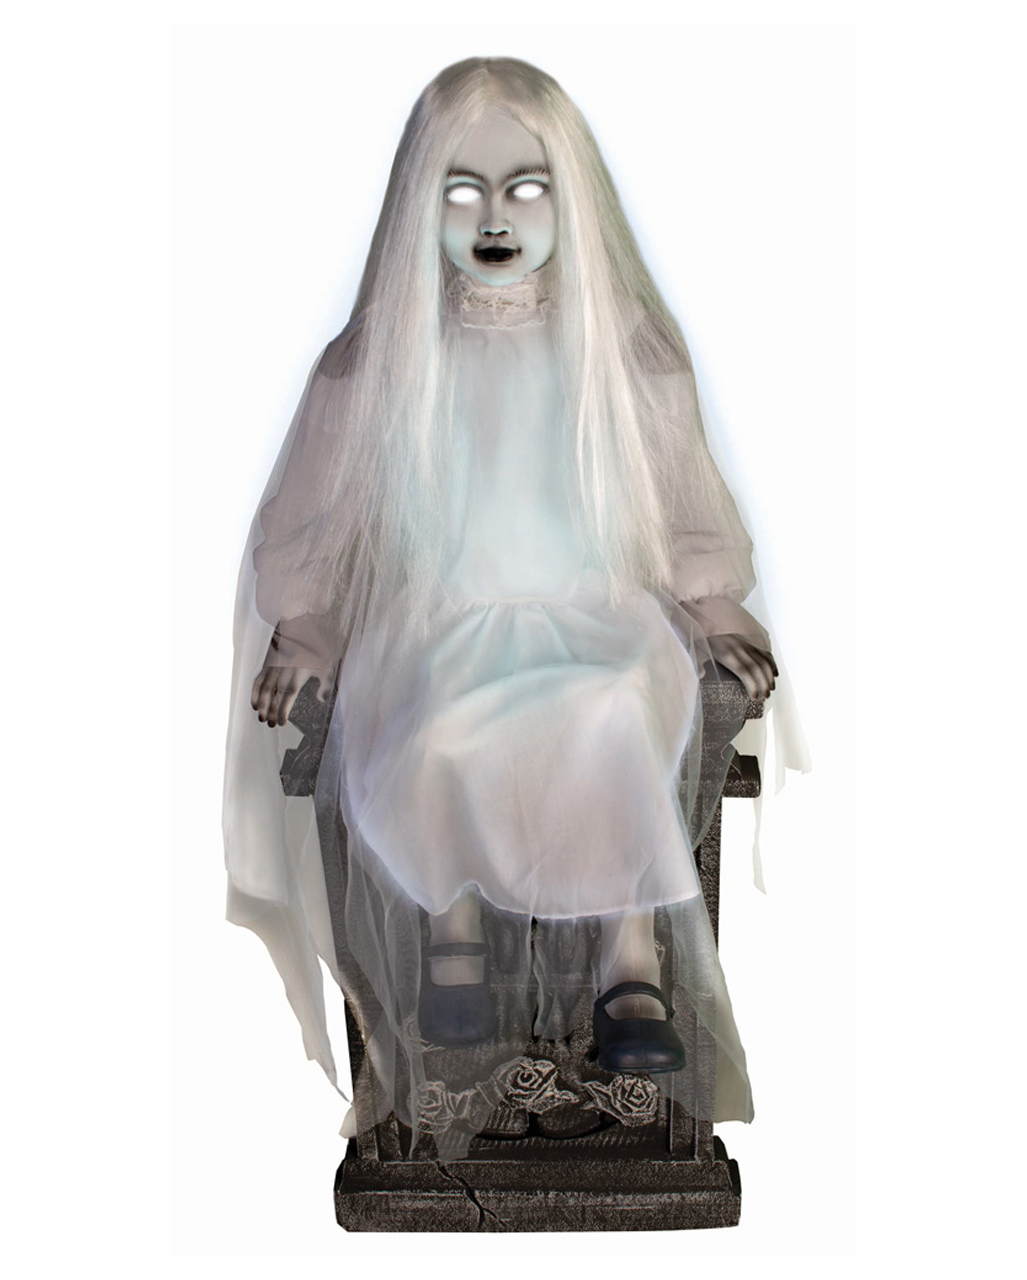 Scary Geistermadchen Auf Grabstein Halloween Animatronic Horror Shop Com